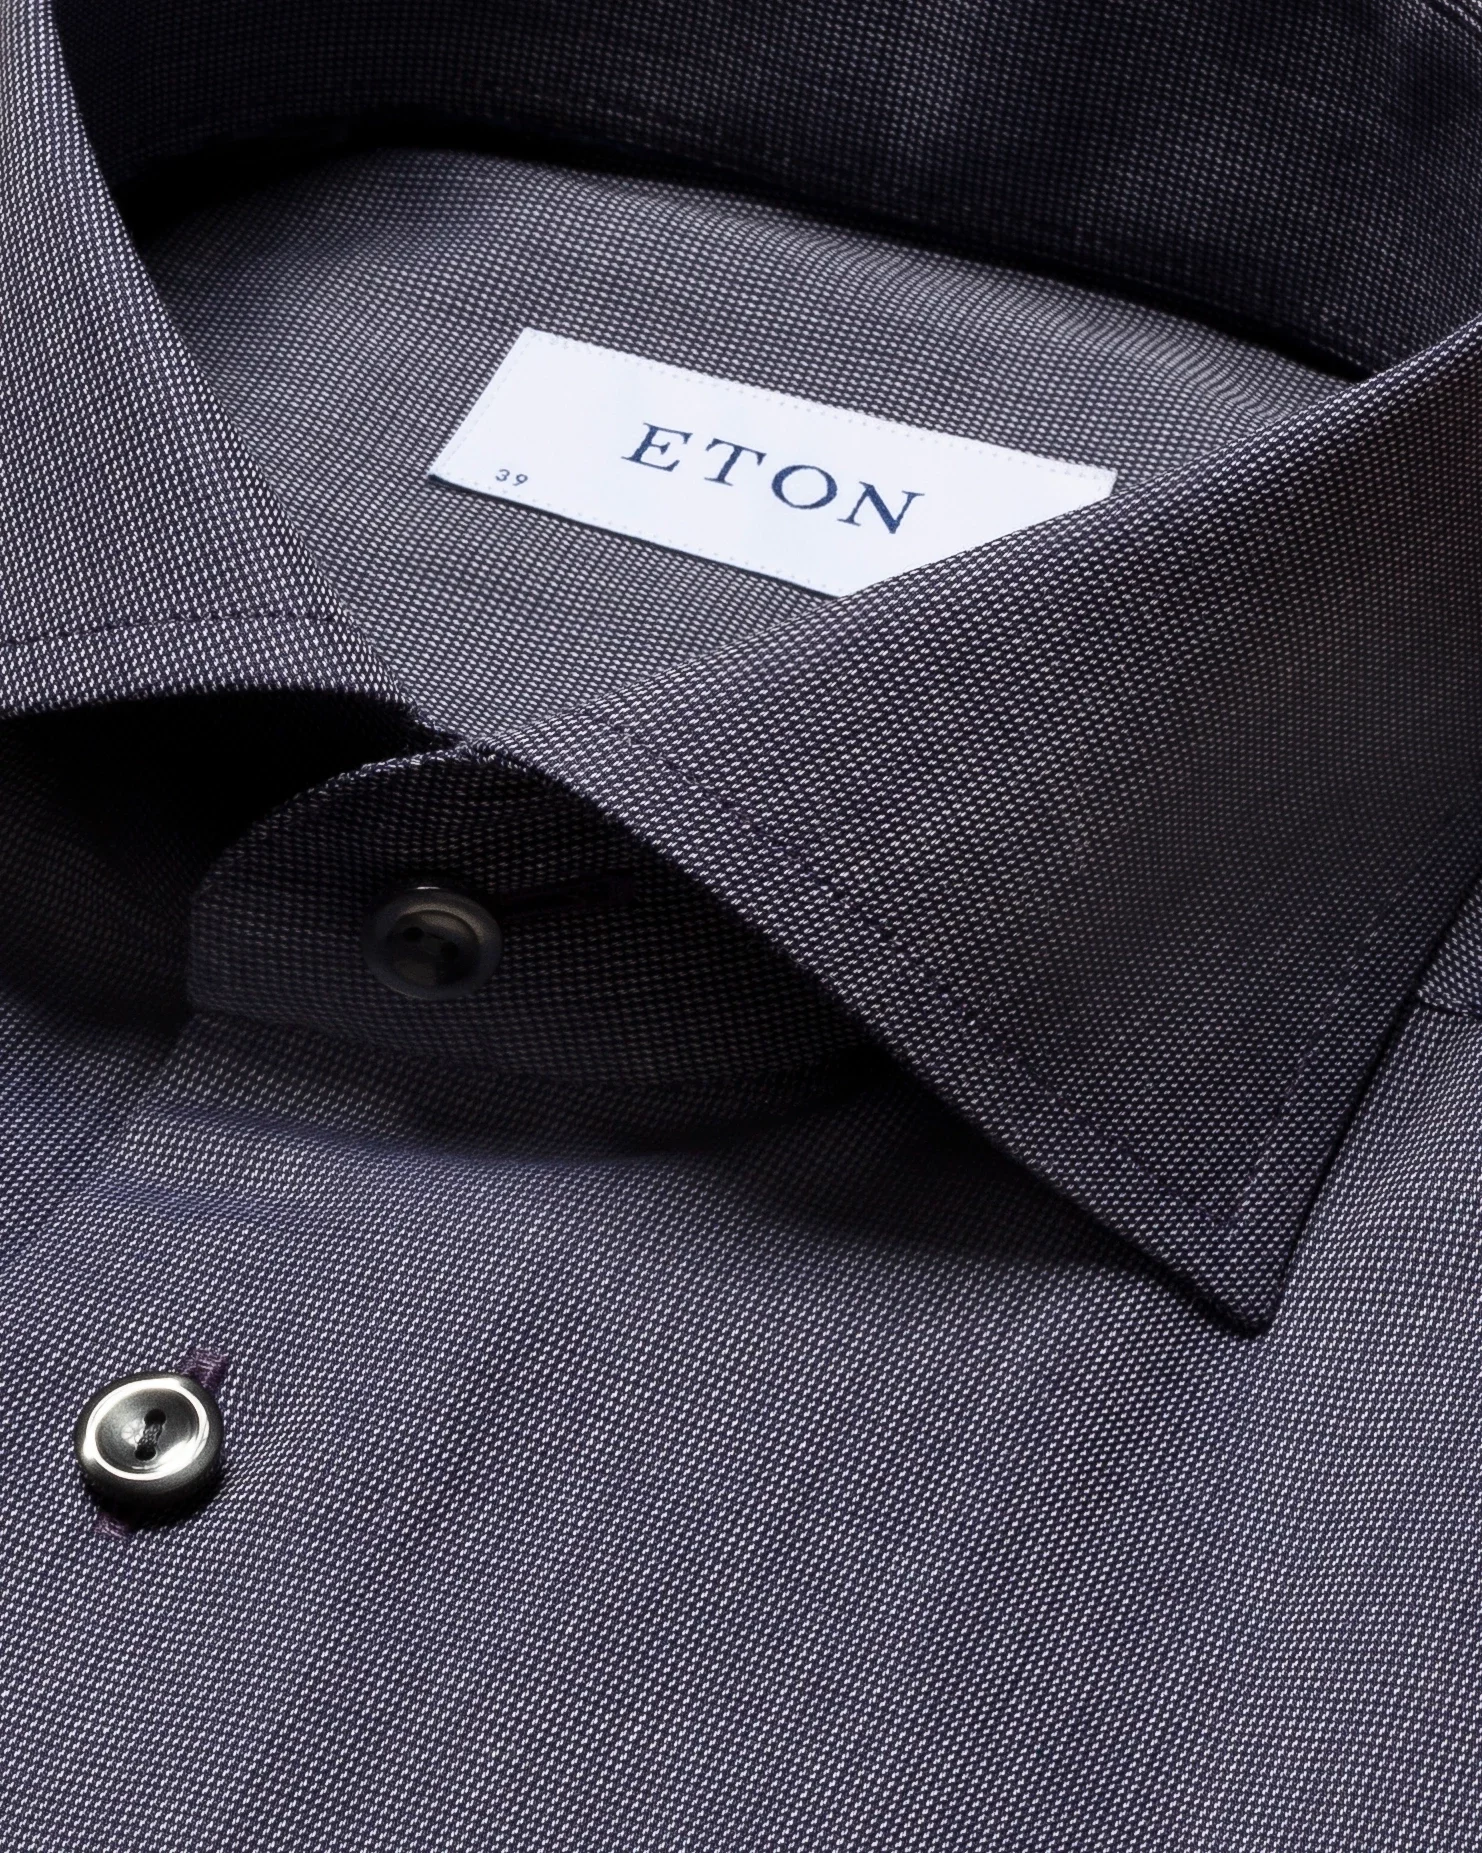 Eton - dark blue flannel shirt